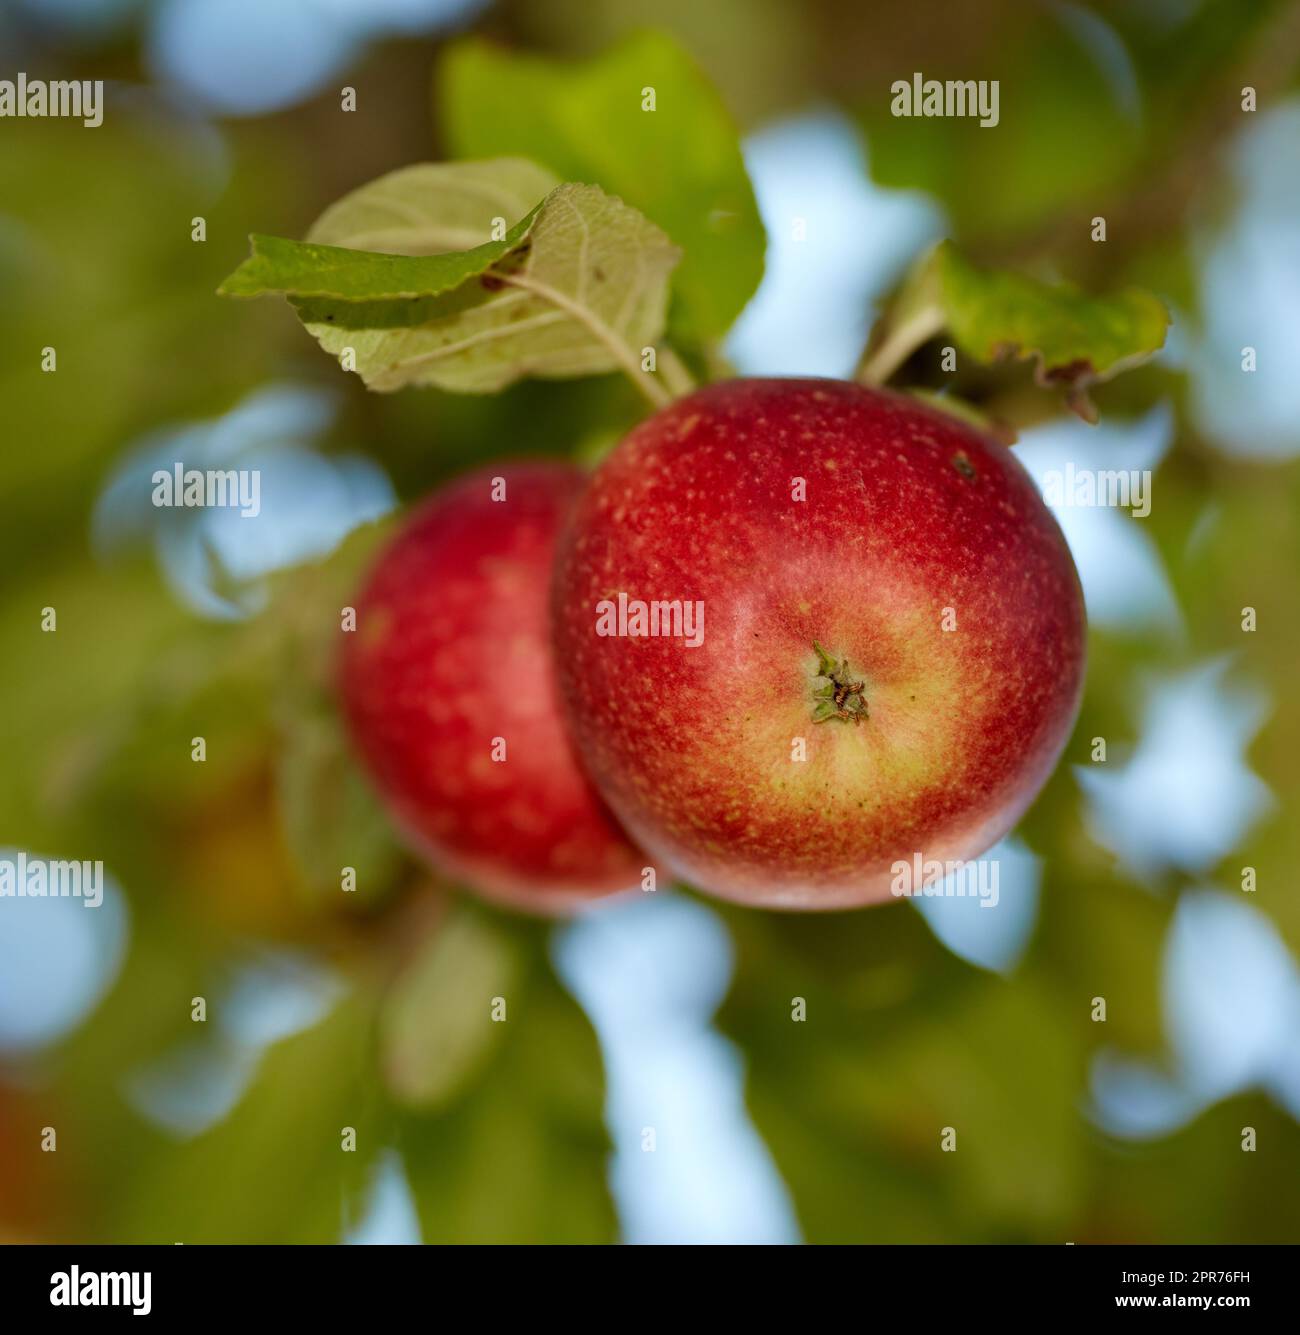 Frische rote Äpfel, die an einem Sommertag im Freien auf einem Obstbaum wachsen. Gesunde Bio-Produkte hängen im Frühling auf einem üppigen grünen Ast. Leckere Ernten in der Natur auf einem Bauernhof Stockfoto